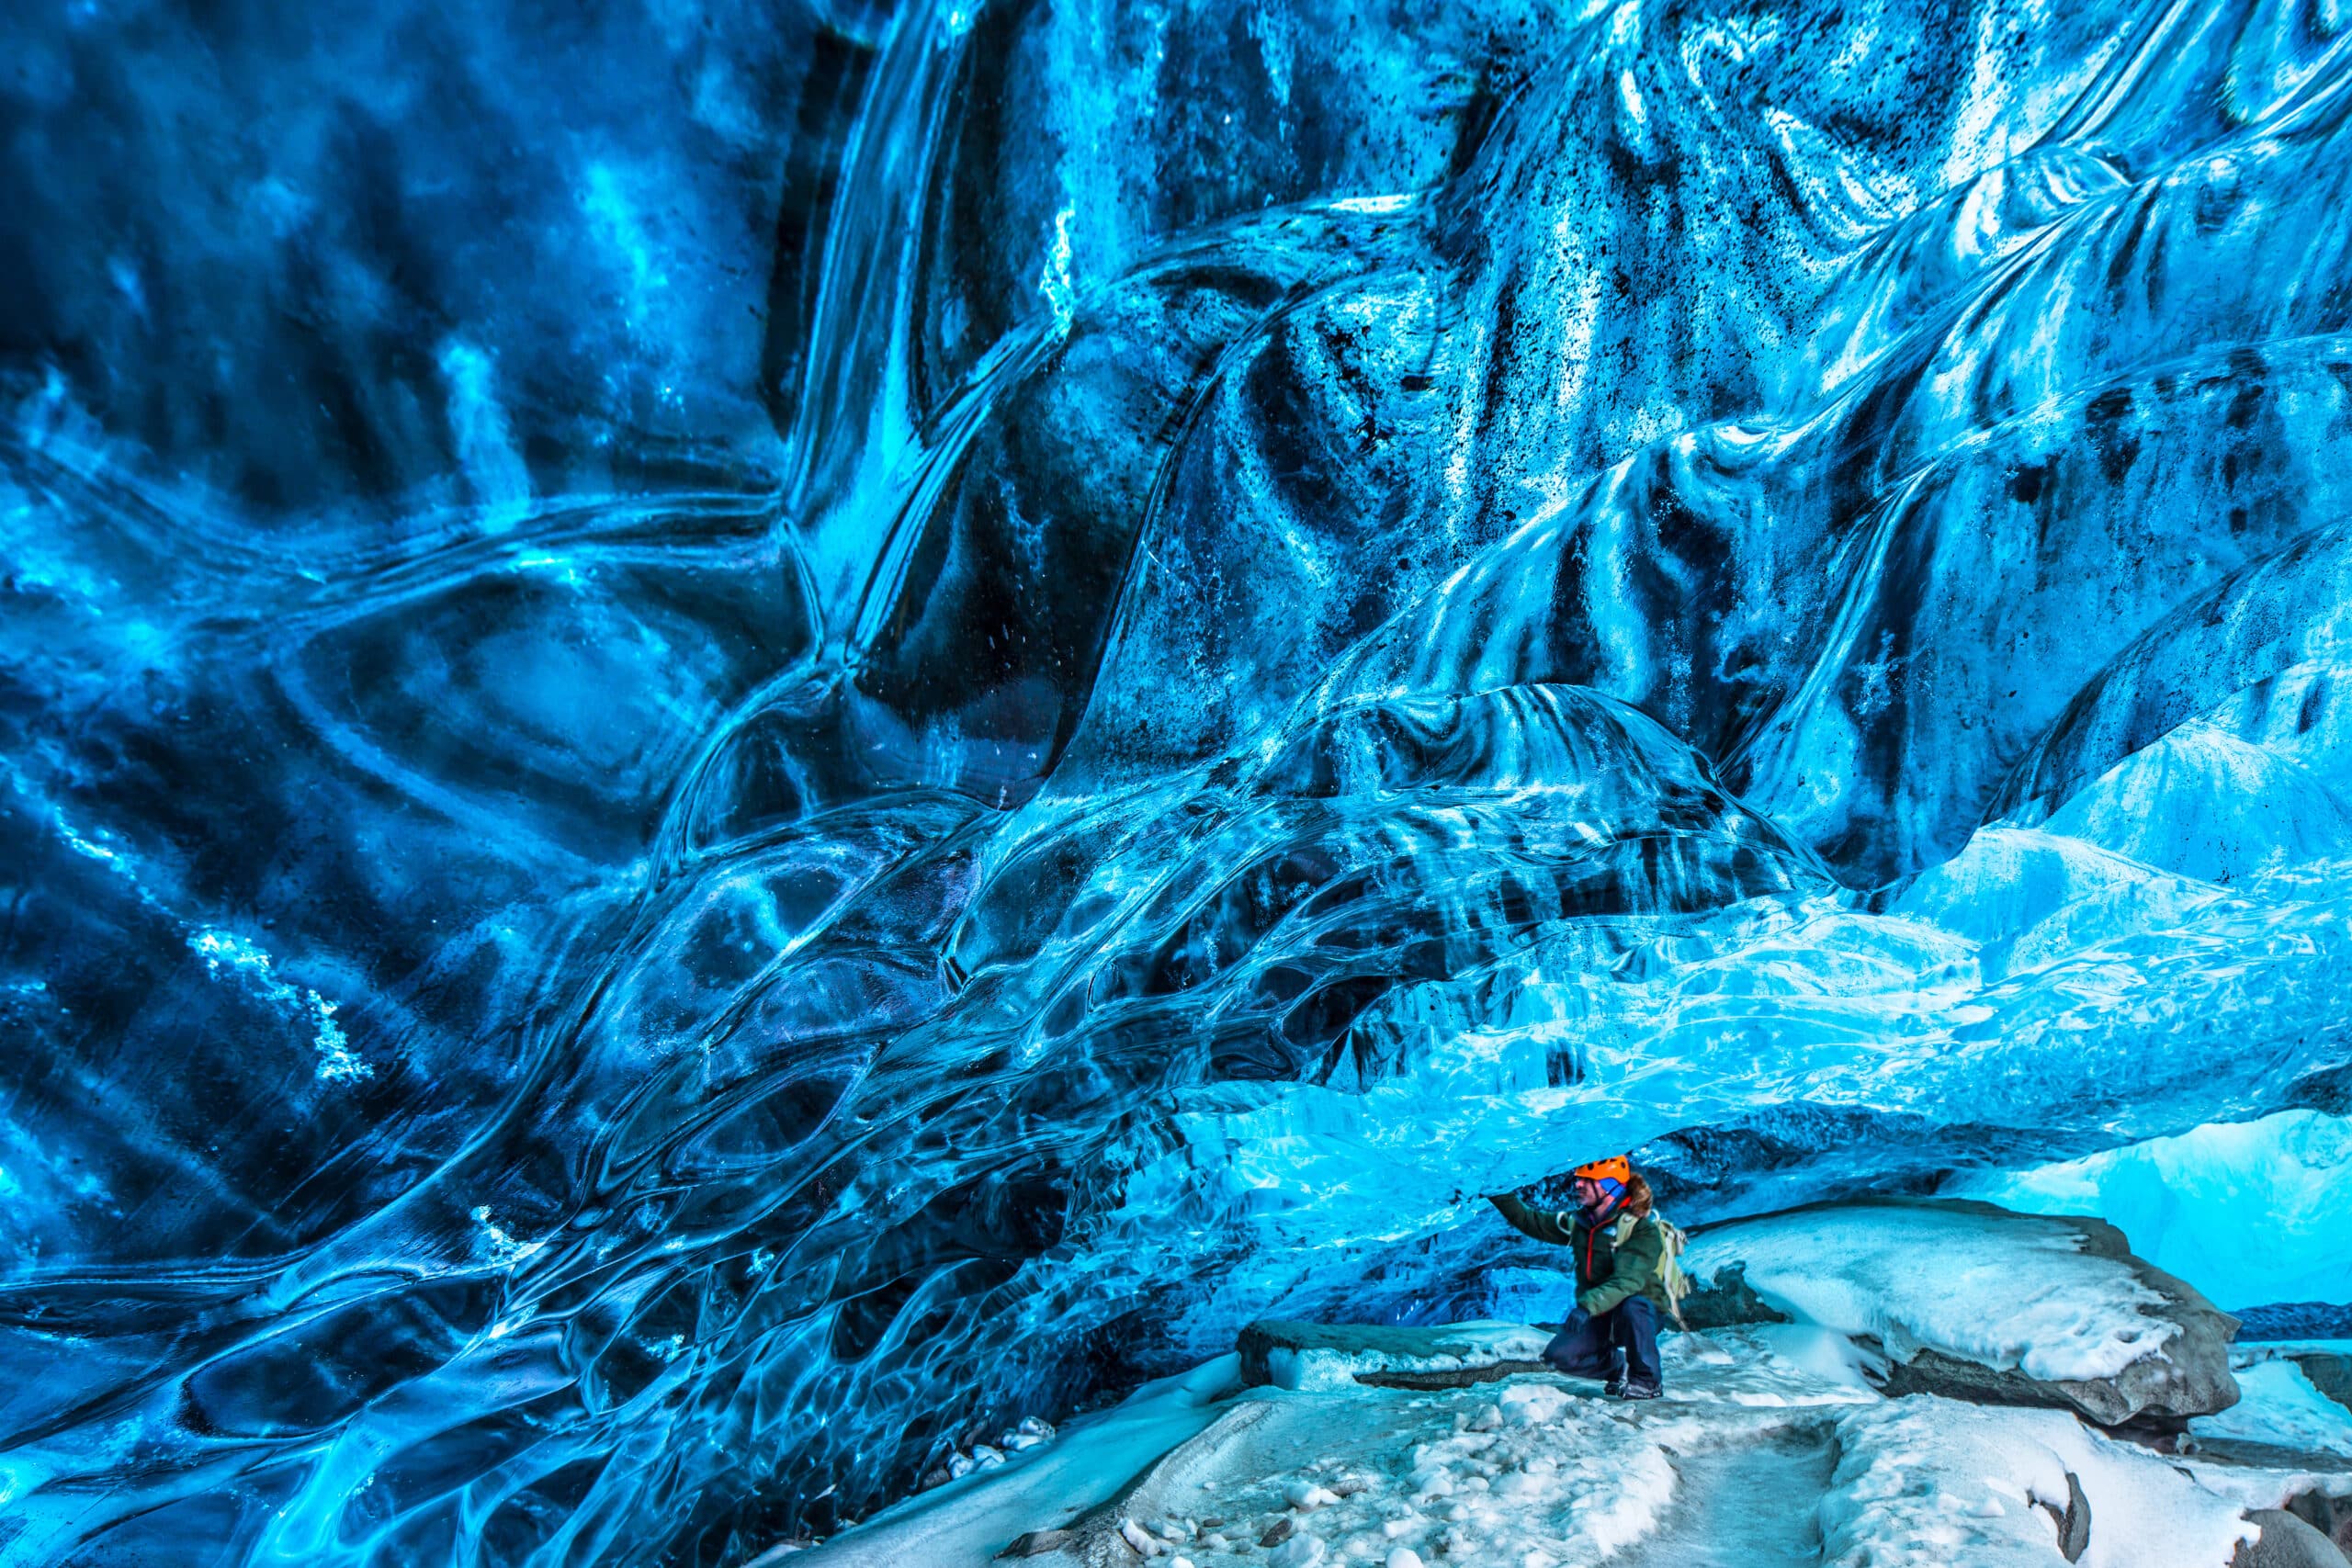 Turista descubriendo la cueva de hielo, viajero activo disfrutando de la belleza de una cueva glacial, vacaciones extremas de invierno, parque nacional Skaftafell, Vatnajokull, Islandia